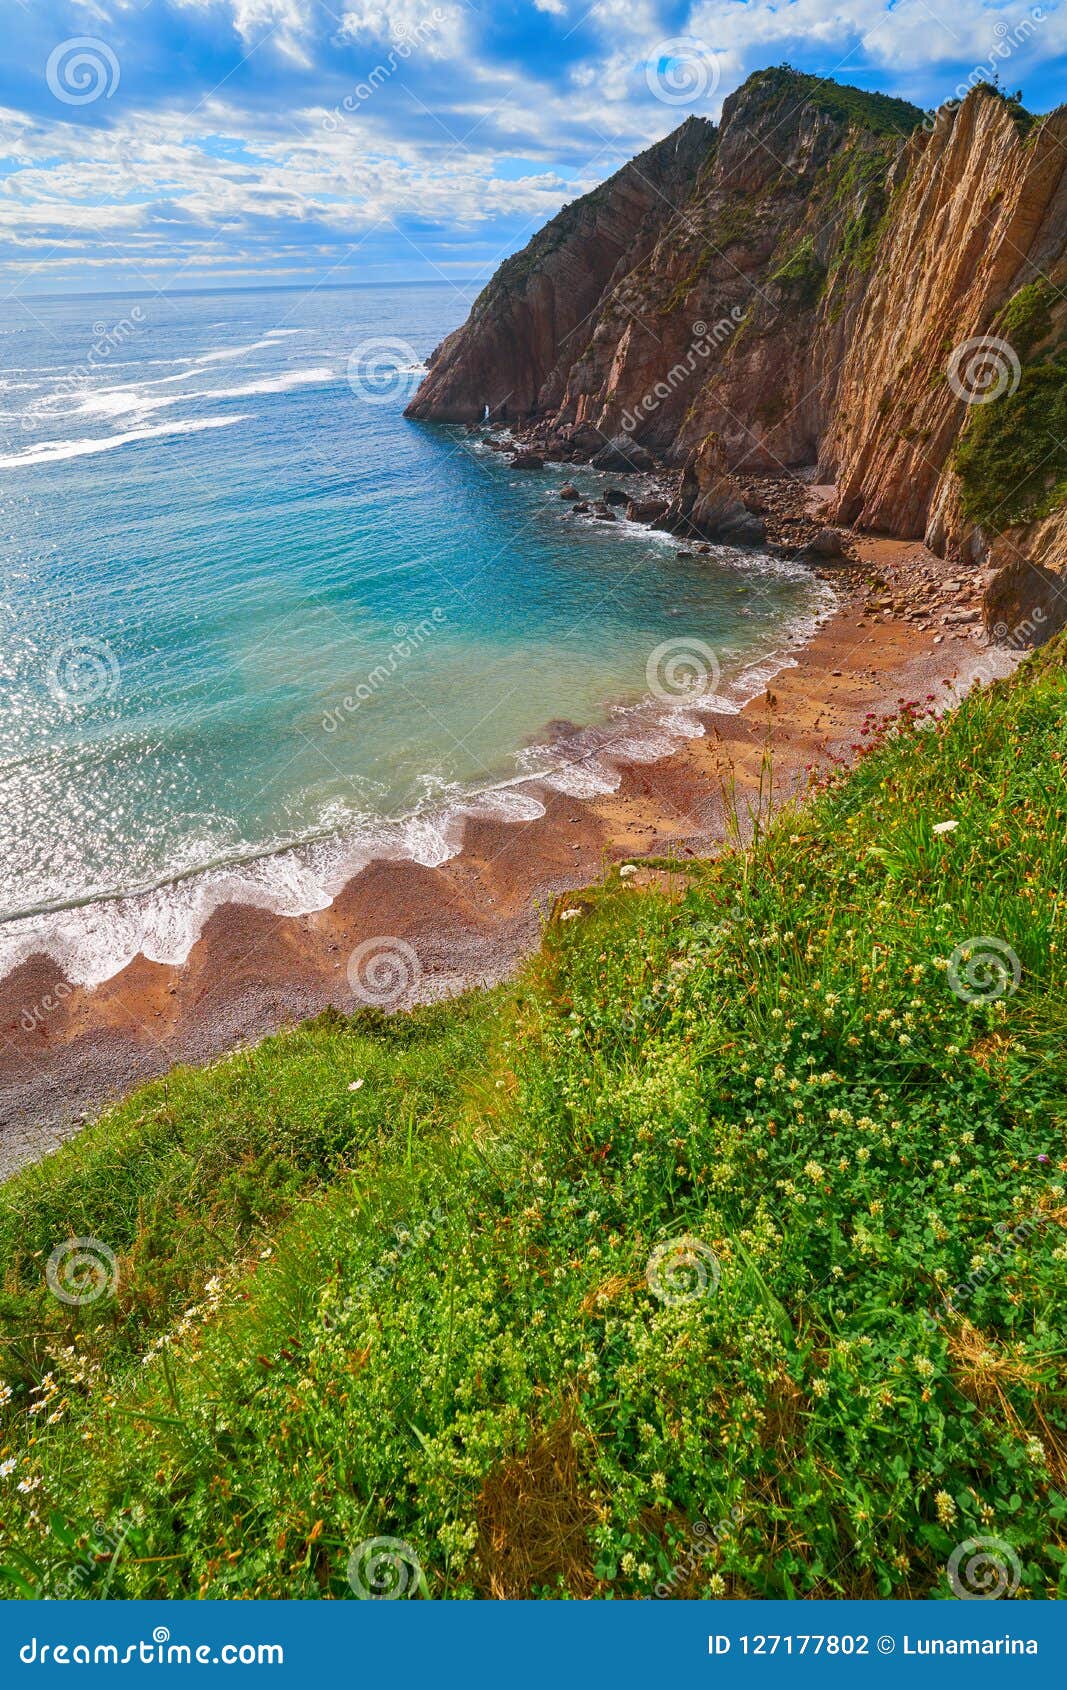 playa del silencio in cudillero asturias spain